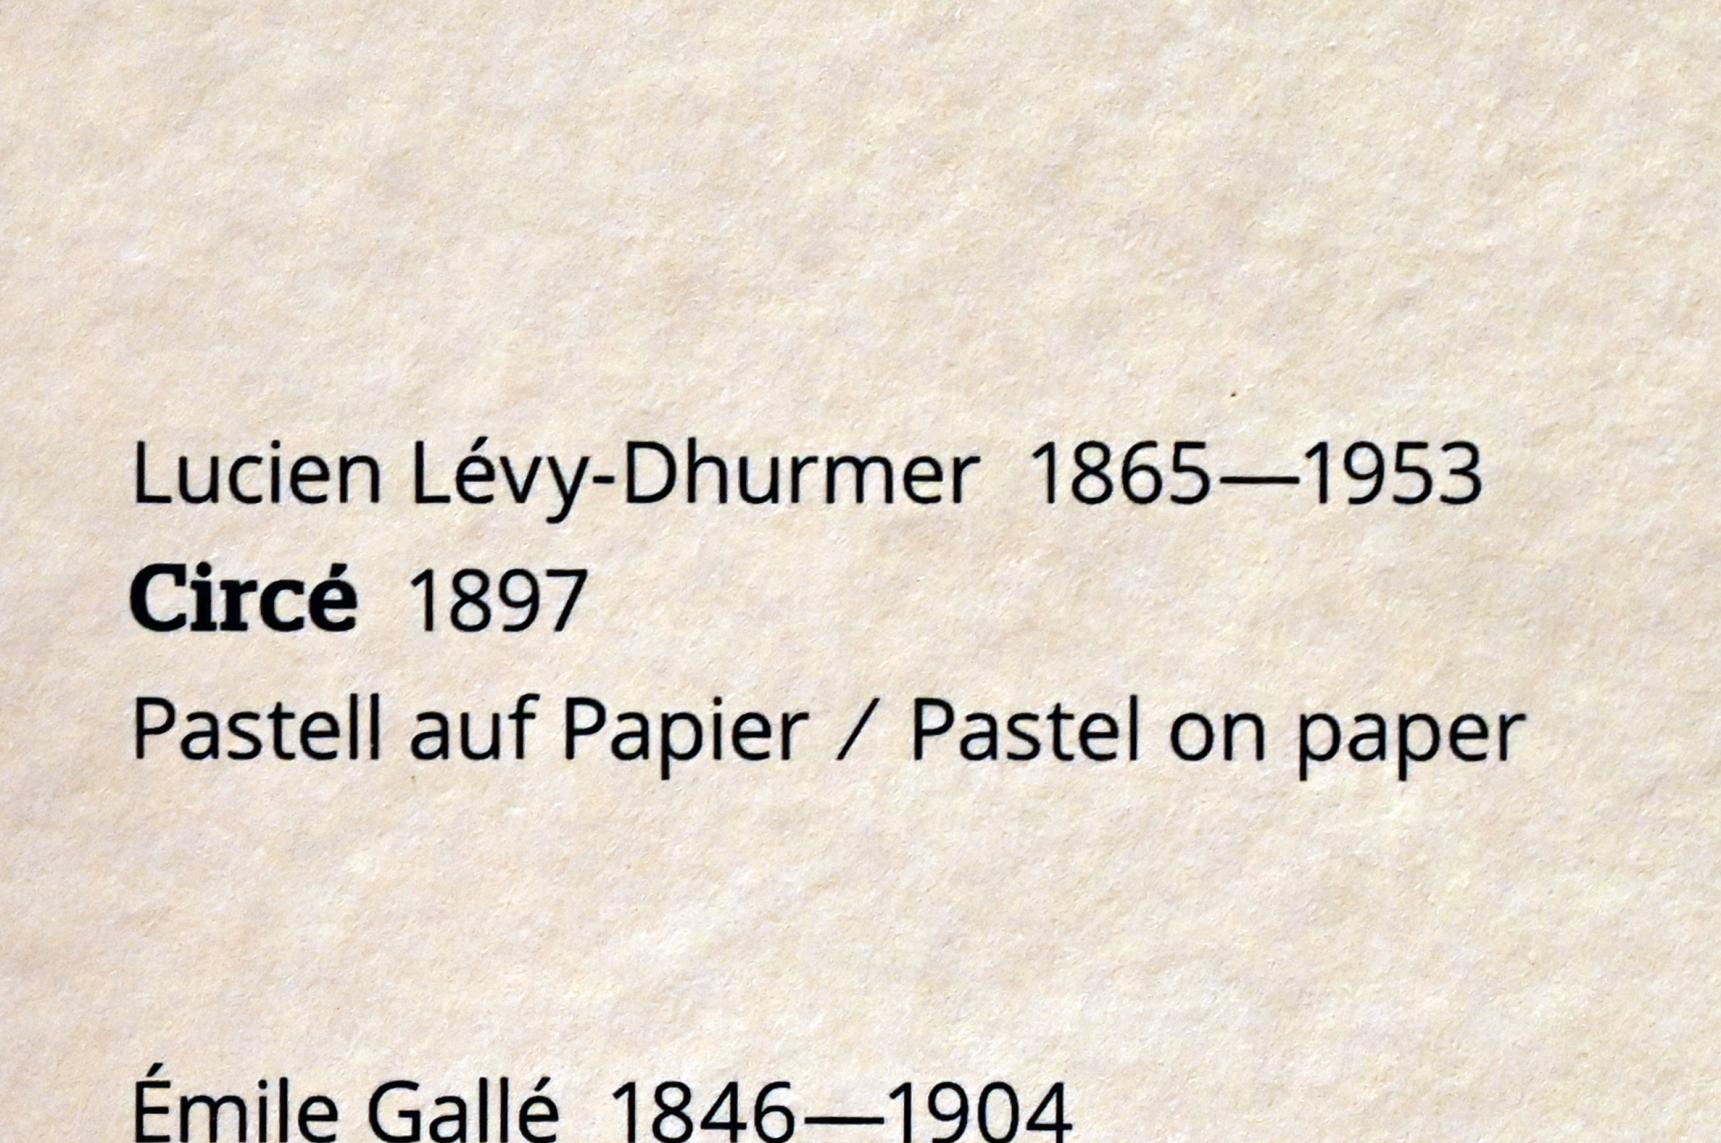 Lucien Lévy-Dhurmer (1897–1902), Circé, Wiesbaden, Museum Wiesbaden, Jugendstil, 1897, Bild 2/2